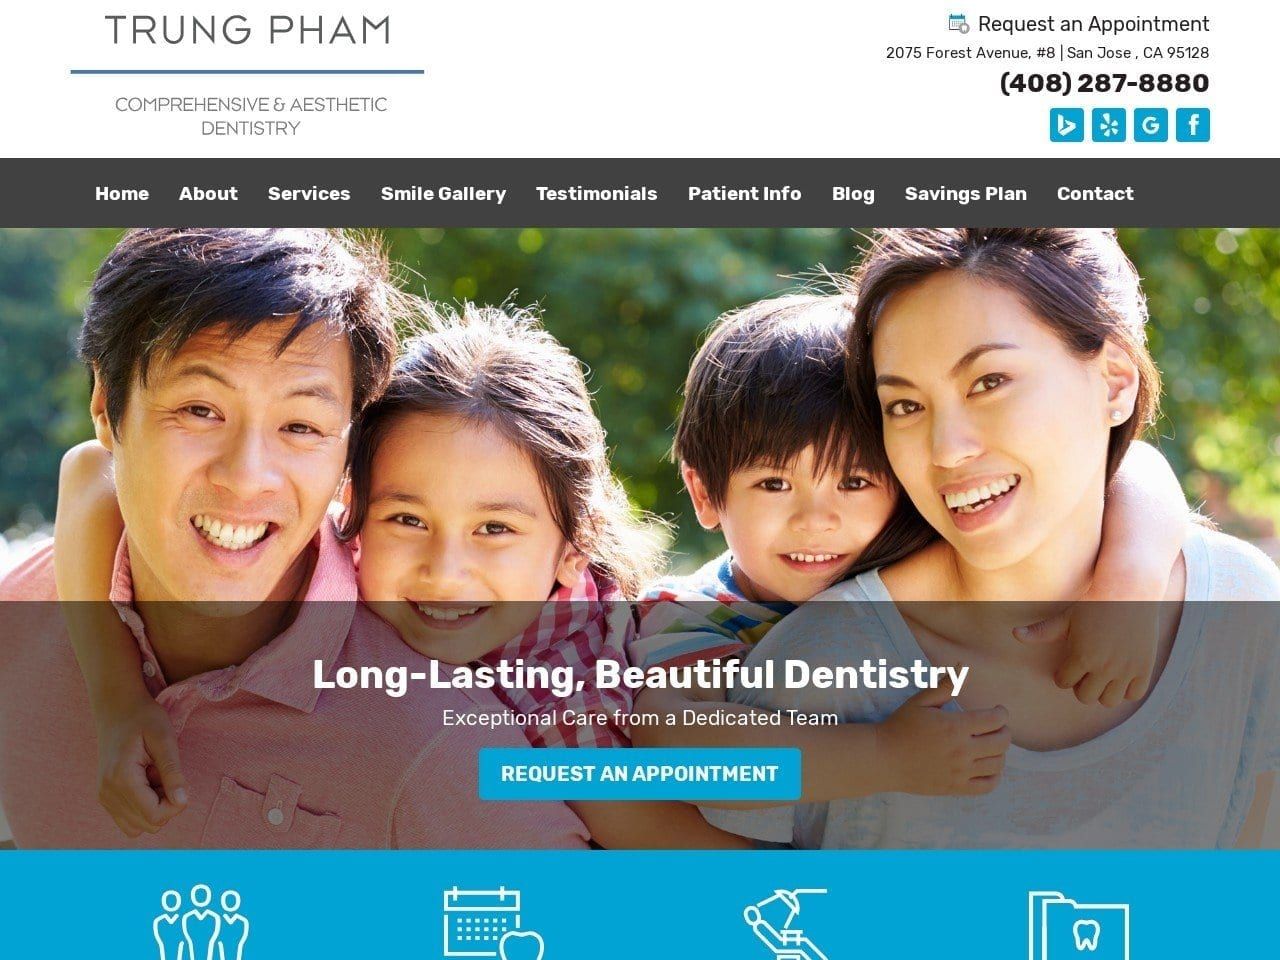 Trung T. Pham DMD Website Screenshot from trungphamdmd.com